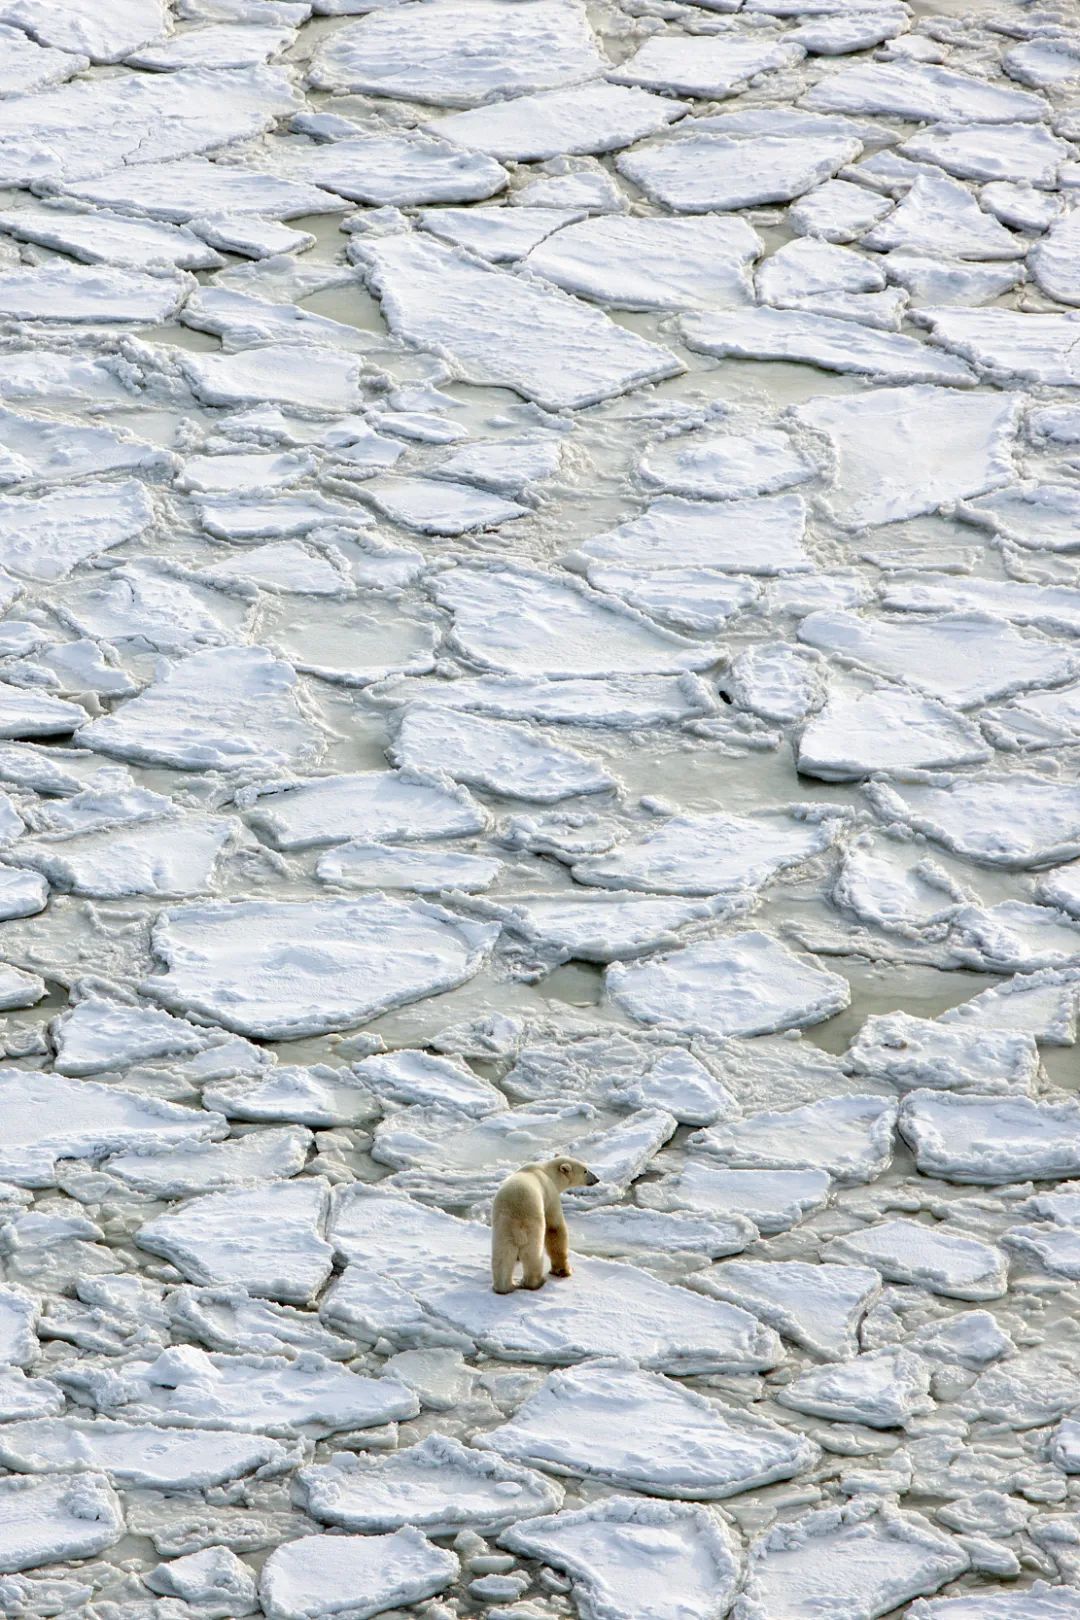 北極是如何形成的？它又將如何影響全球氣候？